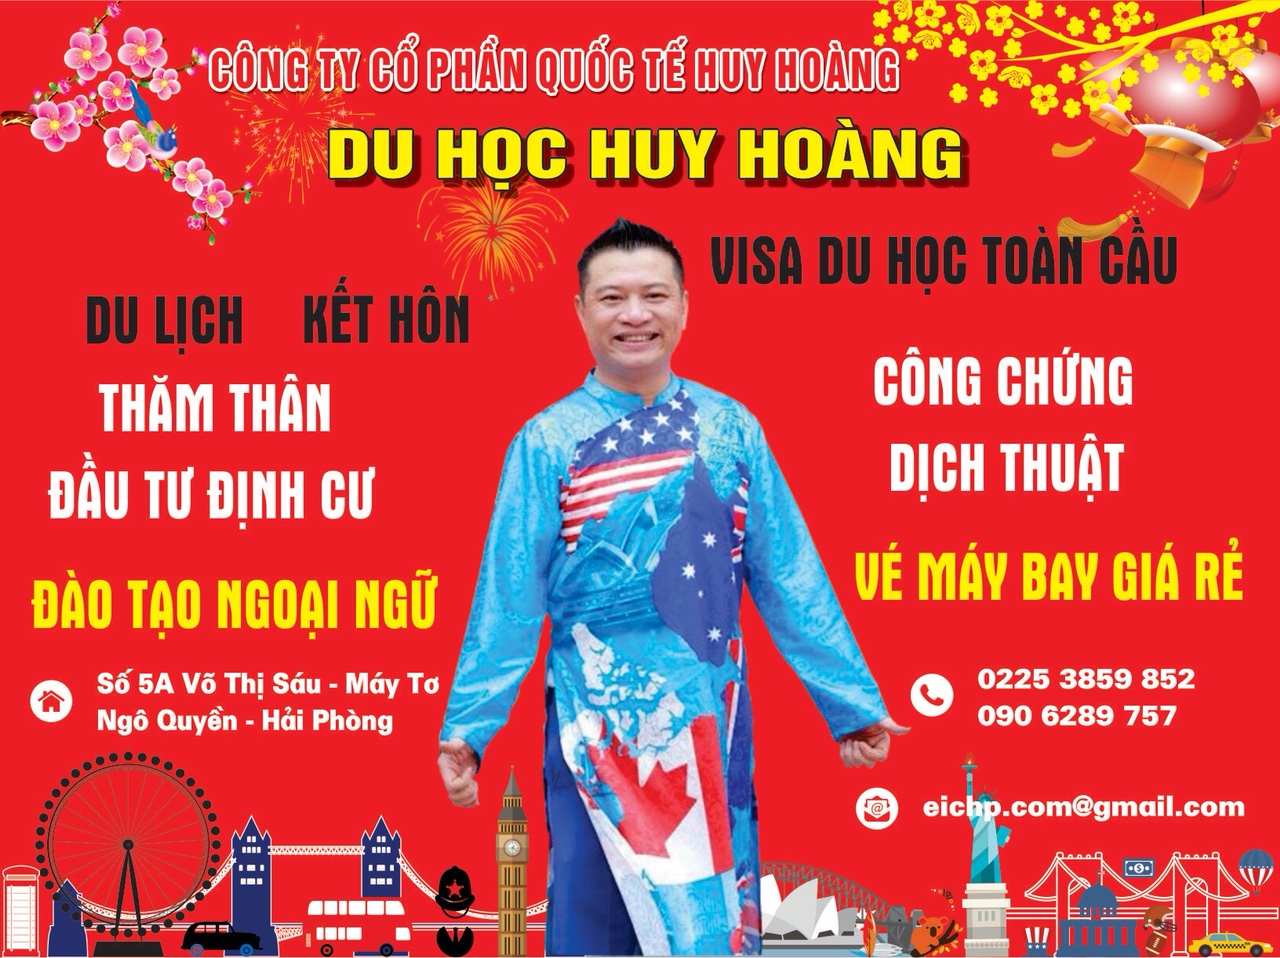 Du học Huy Hoàng thông báo lịch nghỉ Tết Nguyên Đán 2018